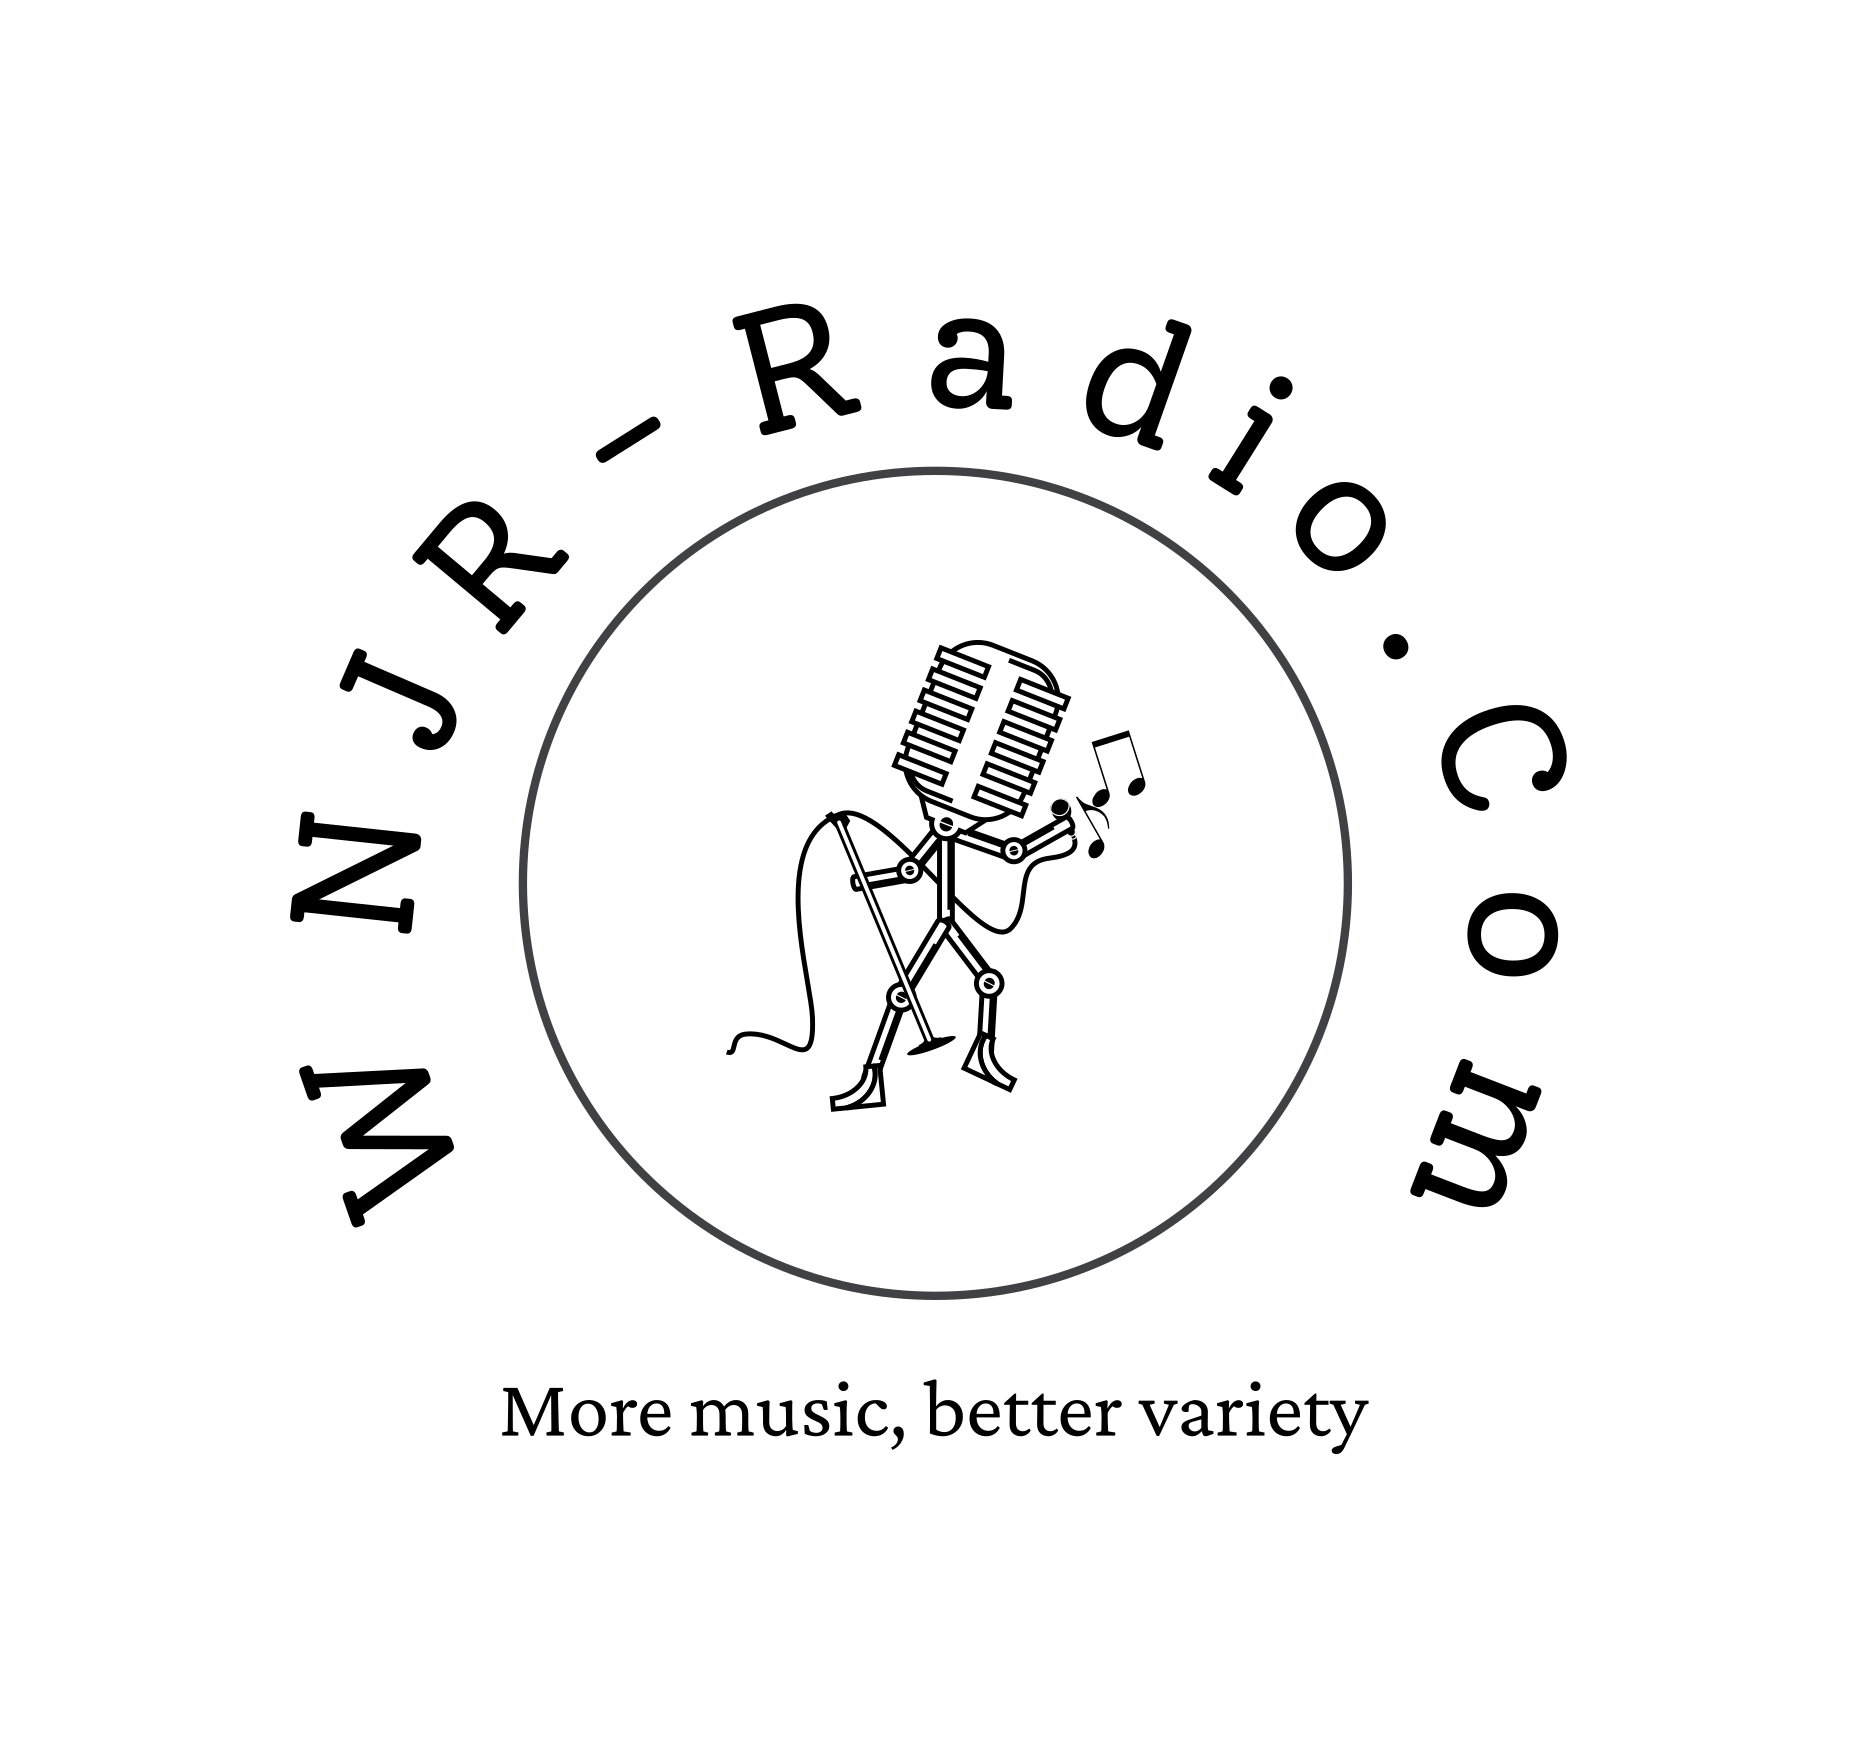 WNJR- Radio.com